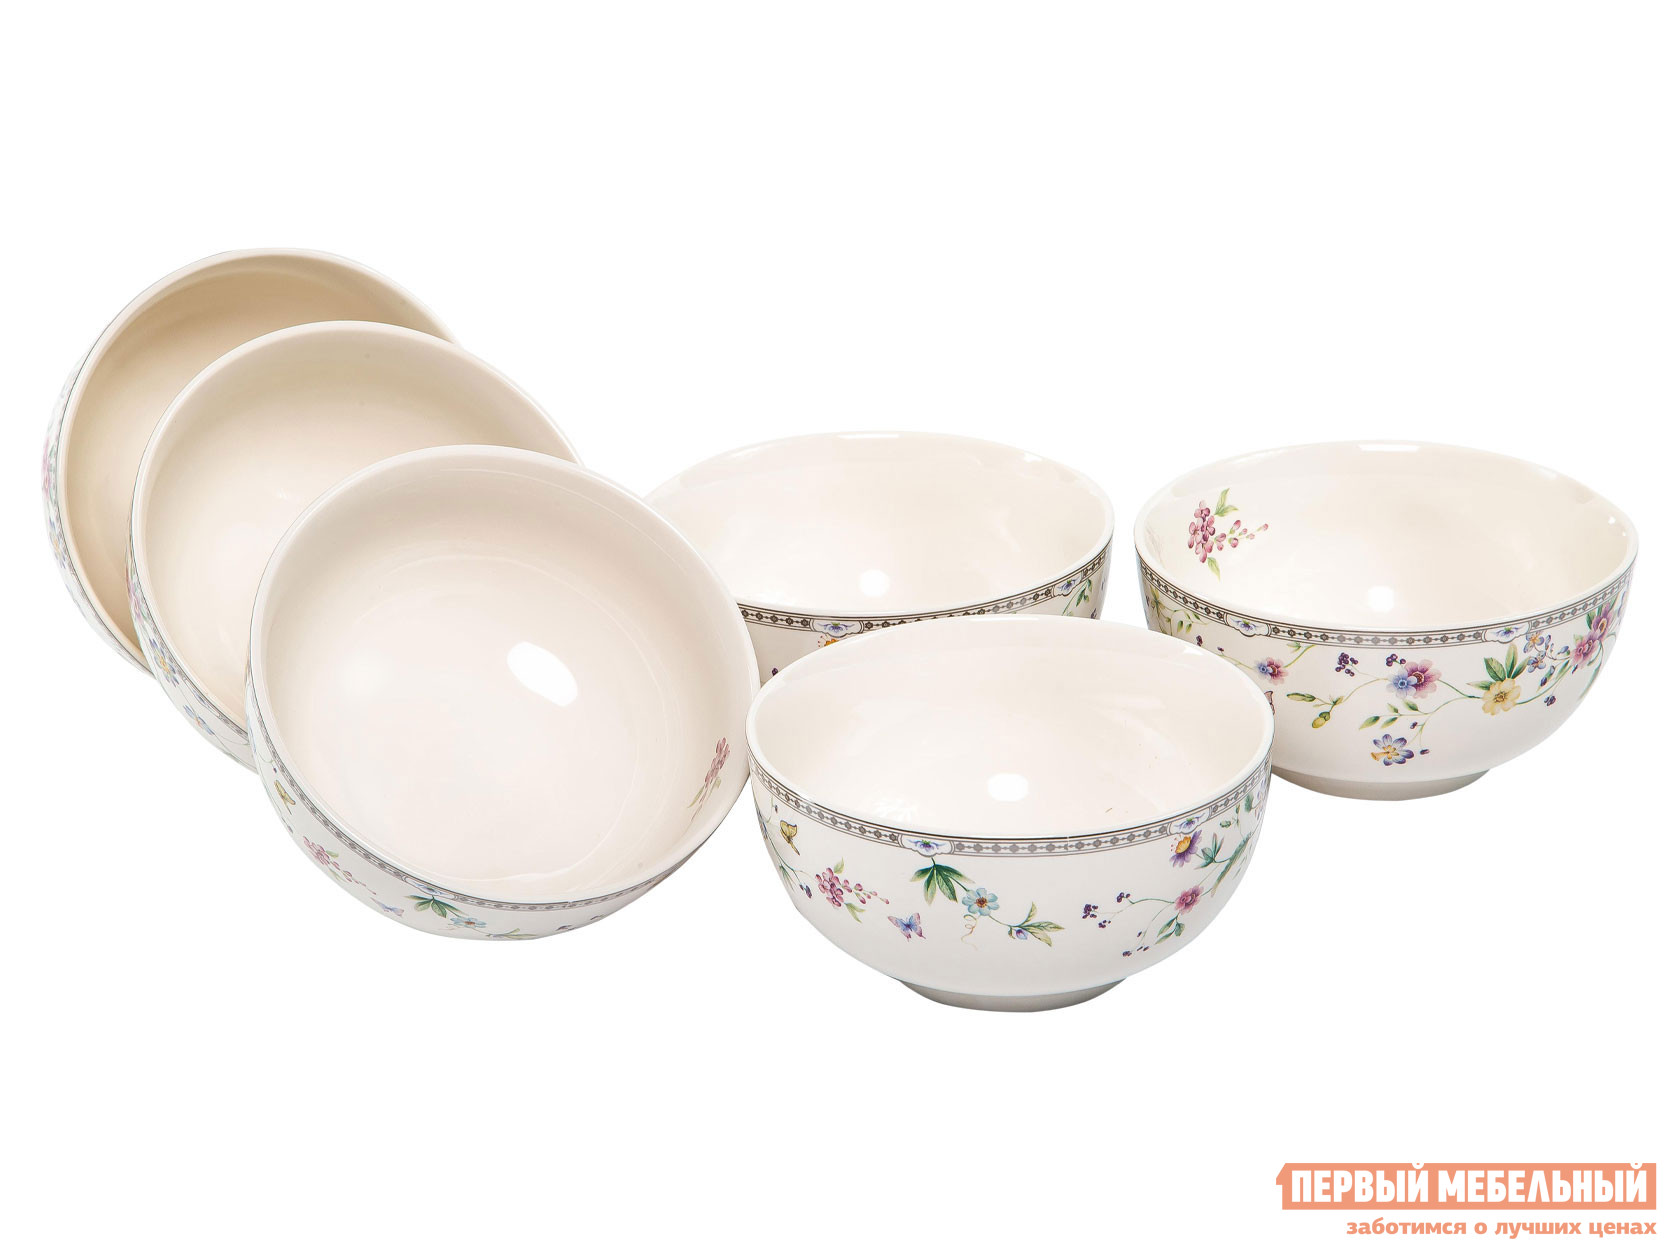 Комплект столовой посуды  Мануэла 6 предметов Белый с цветами, фарфор